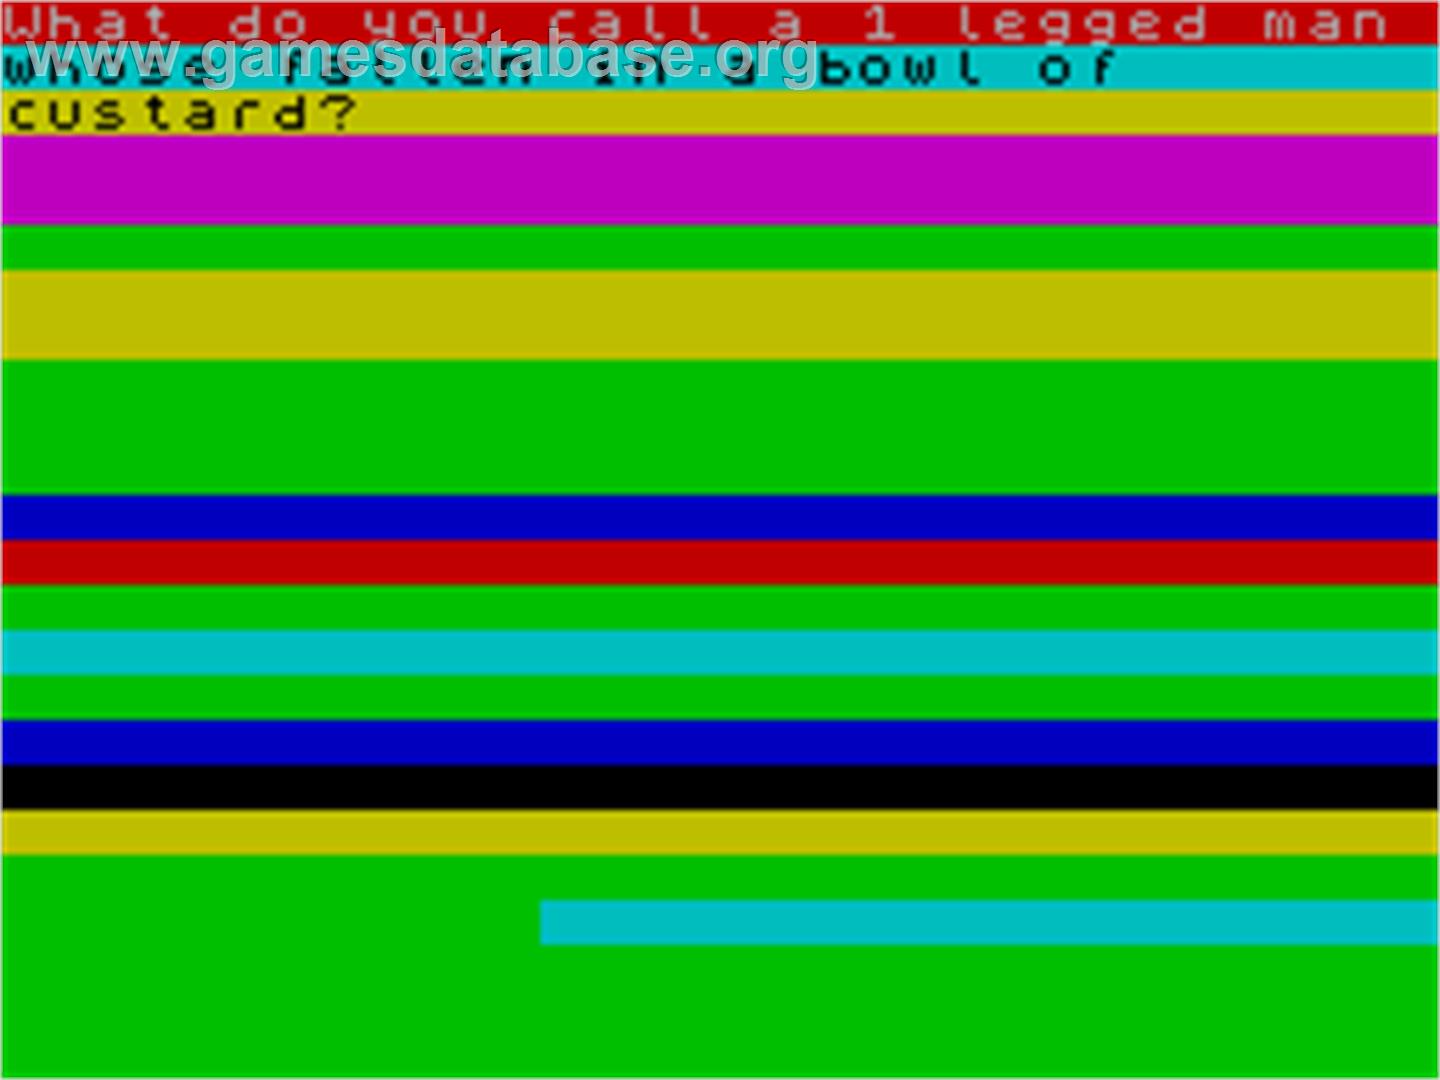 Power - Sinclair ZX Spectrum - Artwork - In Game